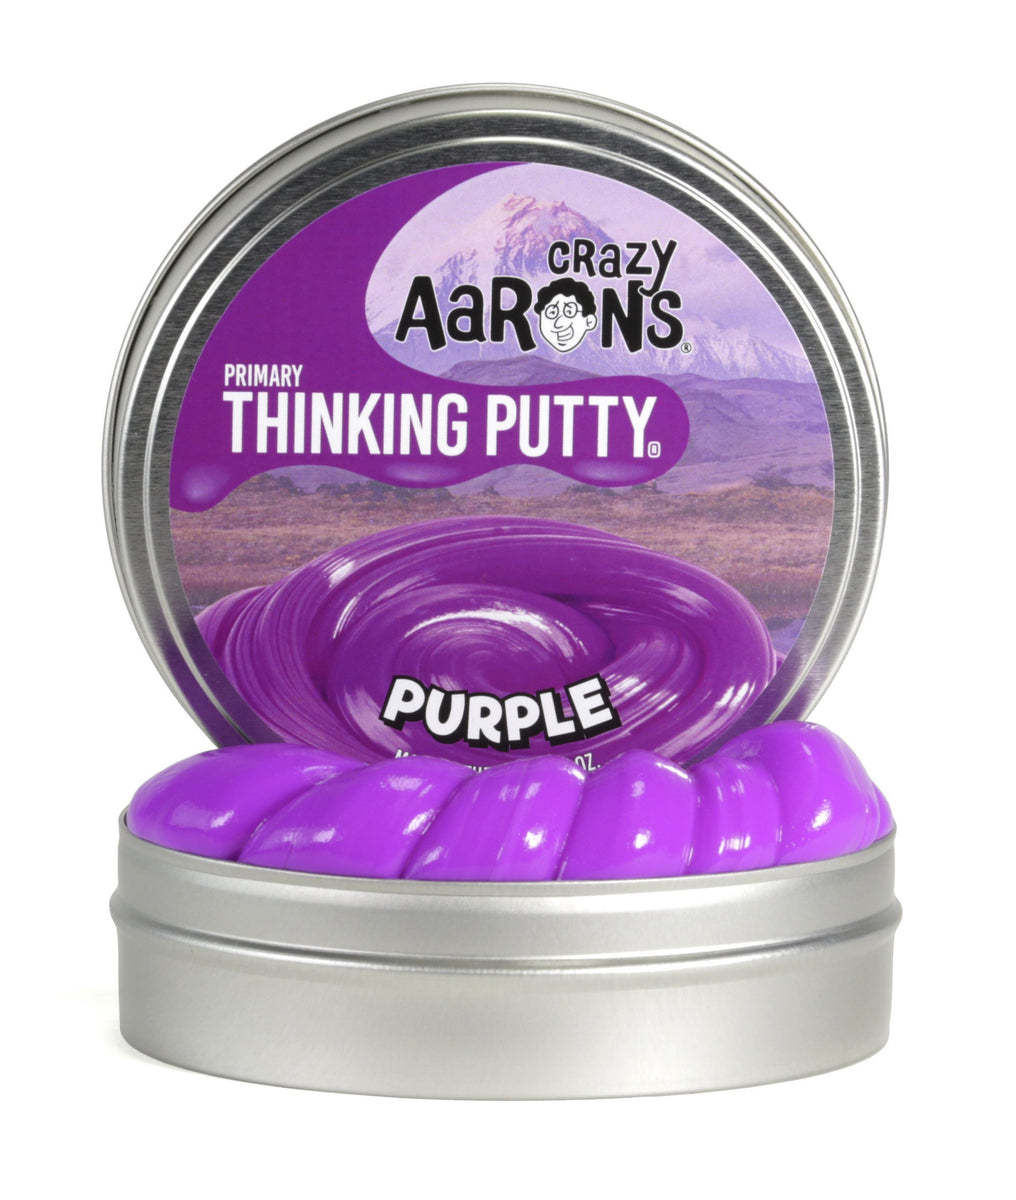 aaron's thinking putty